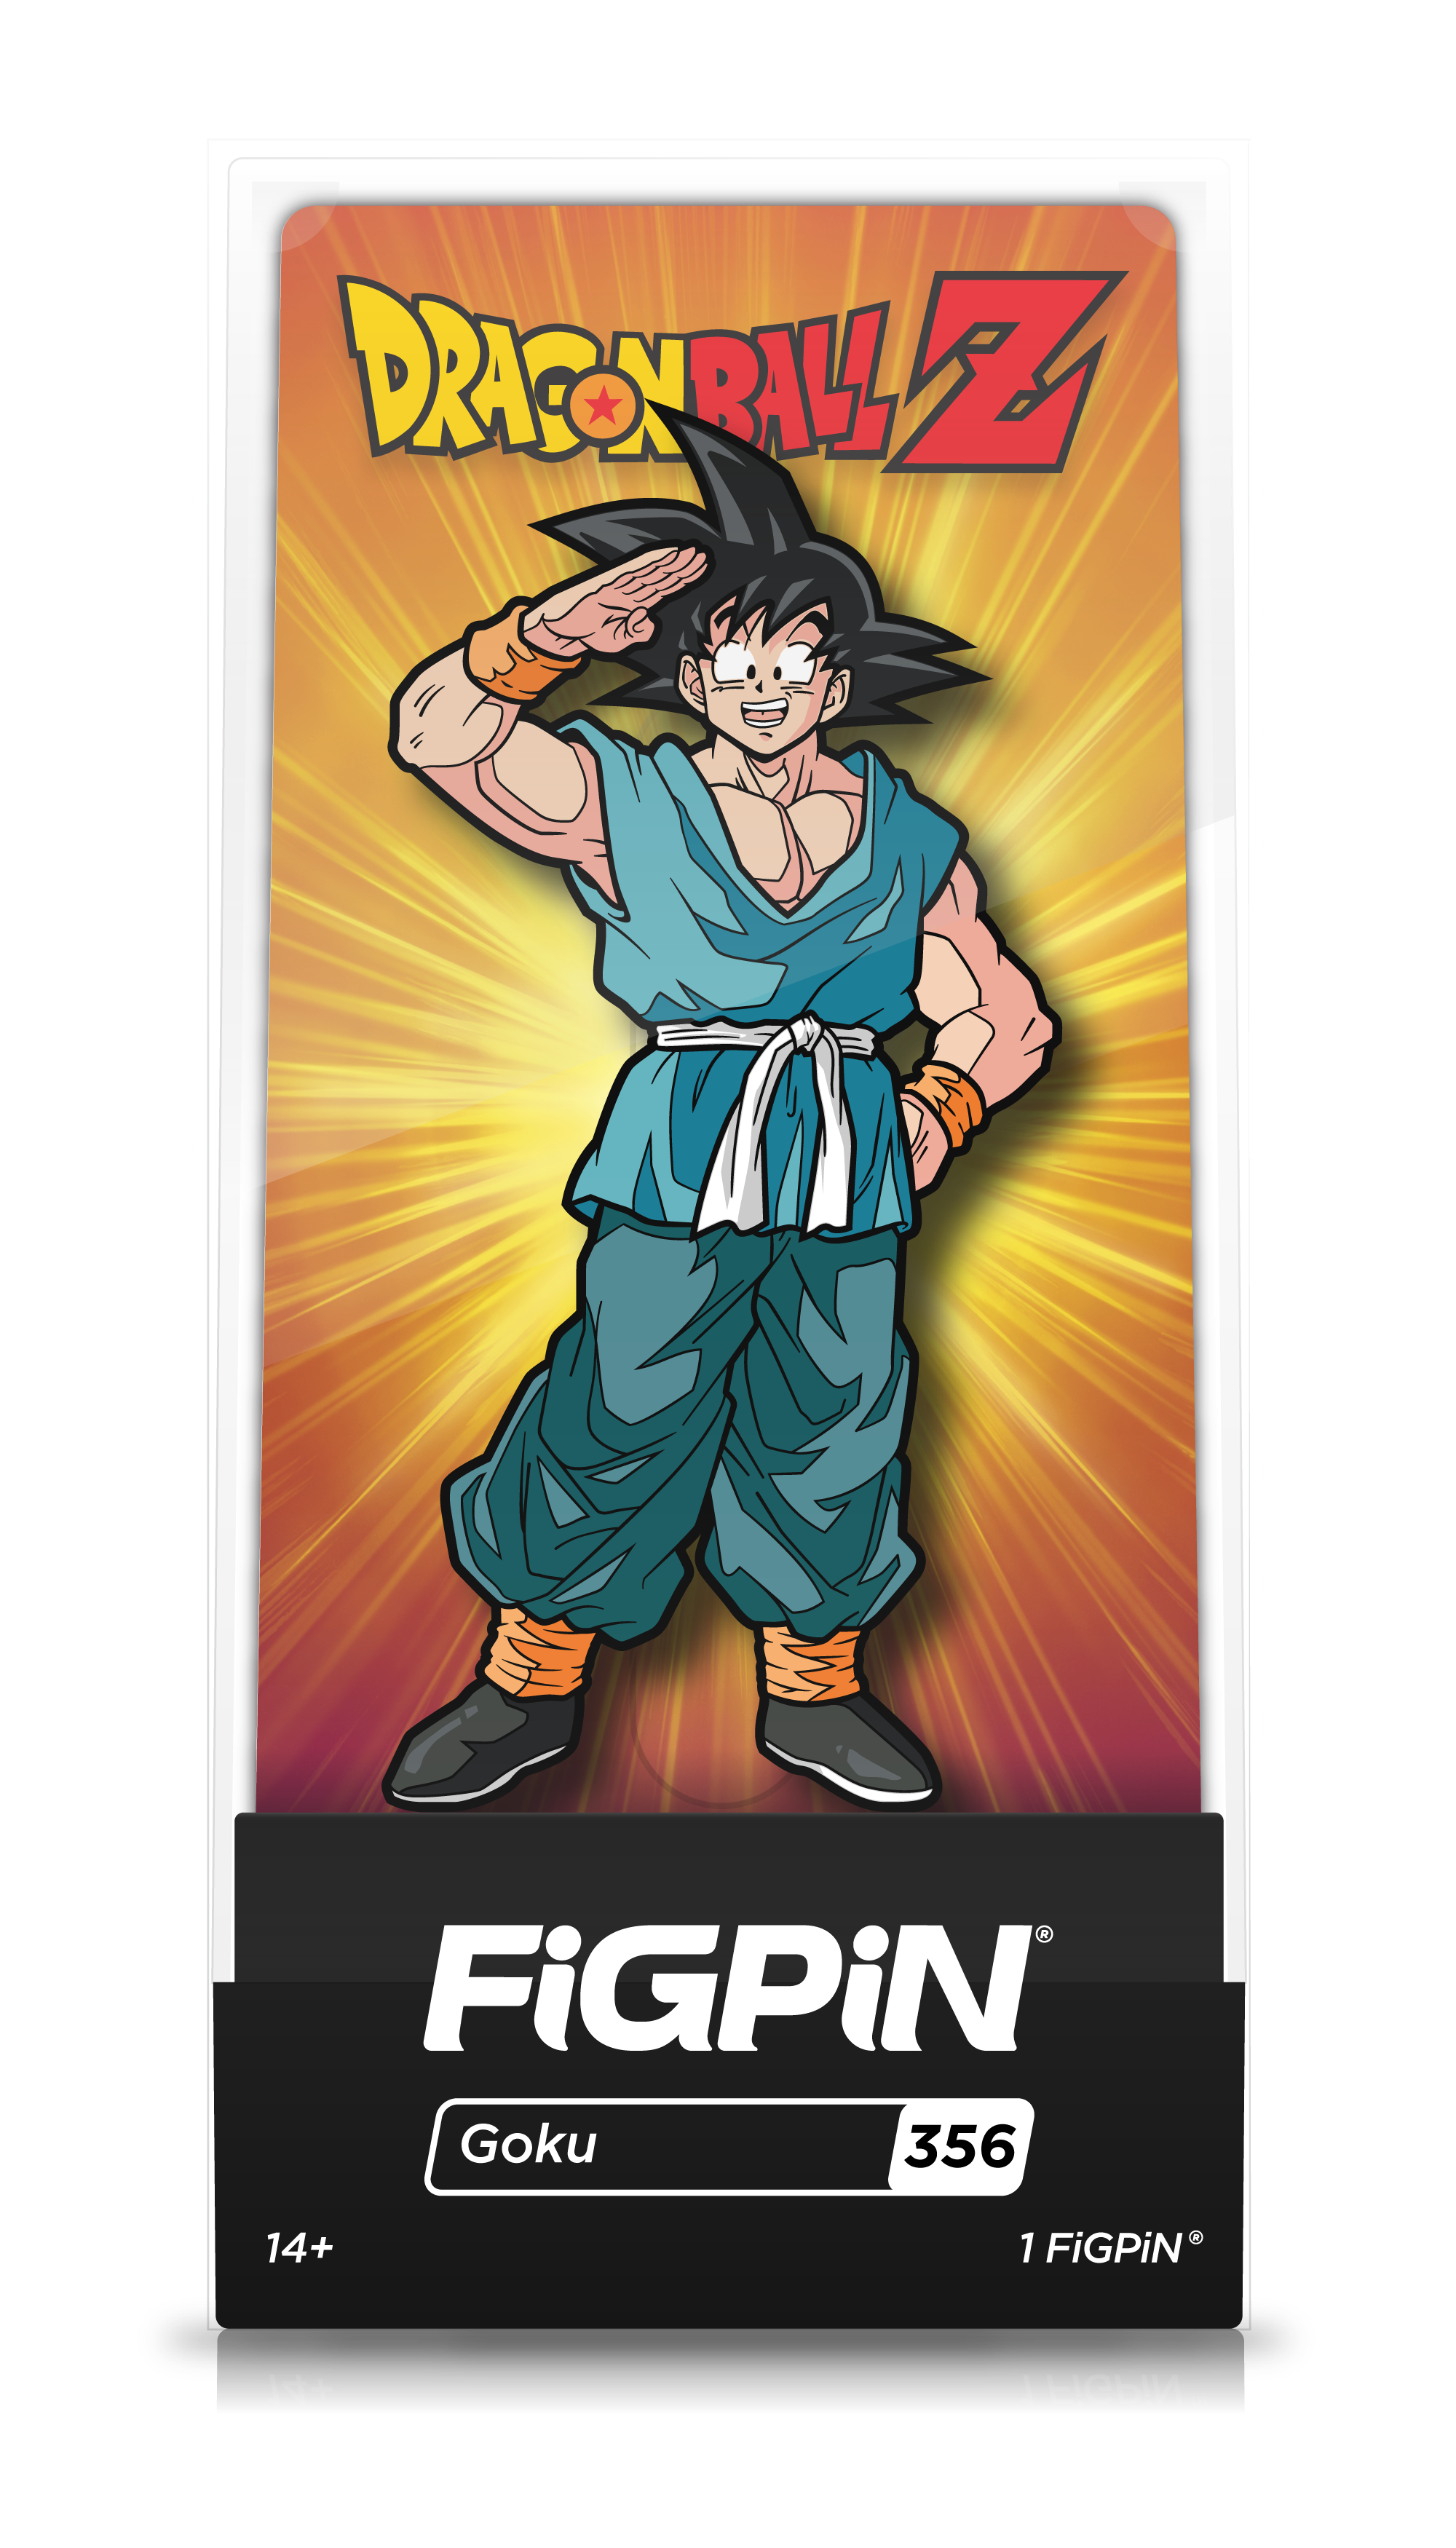 Goku (356)